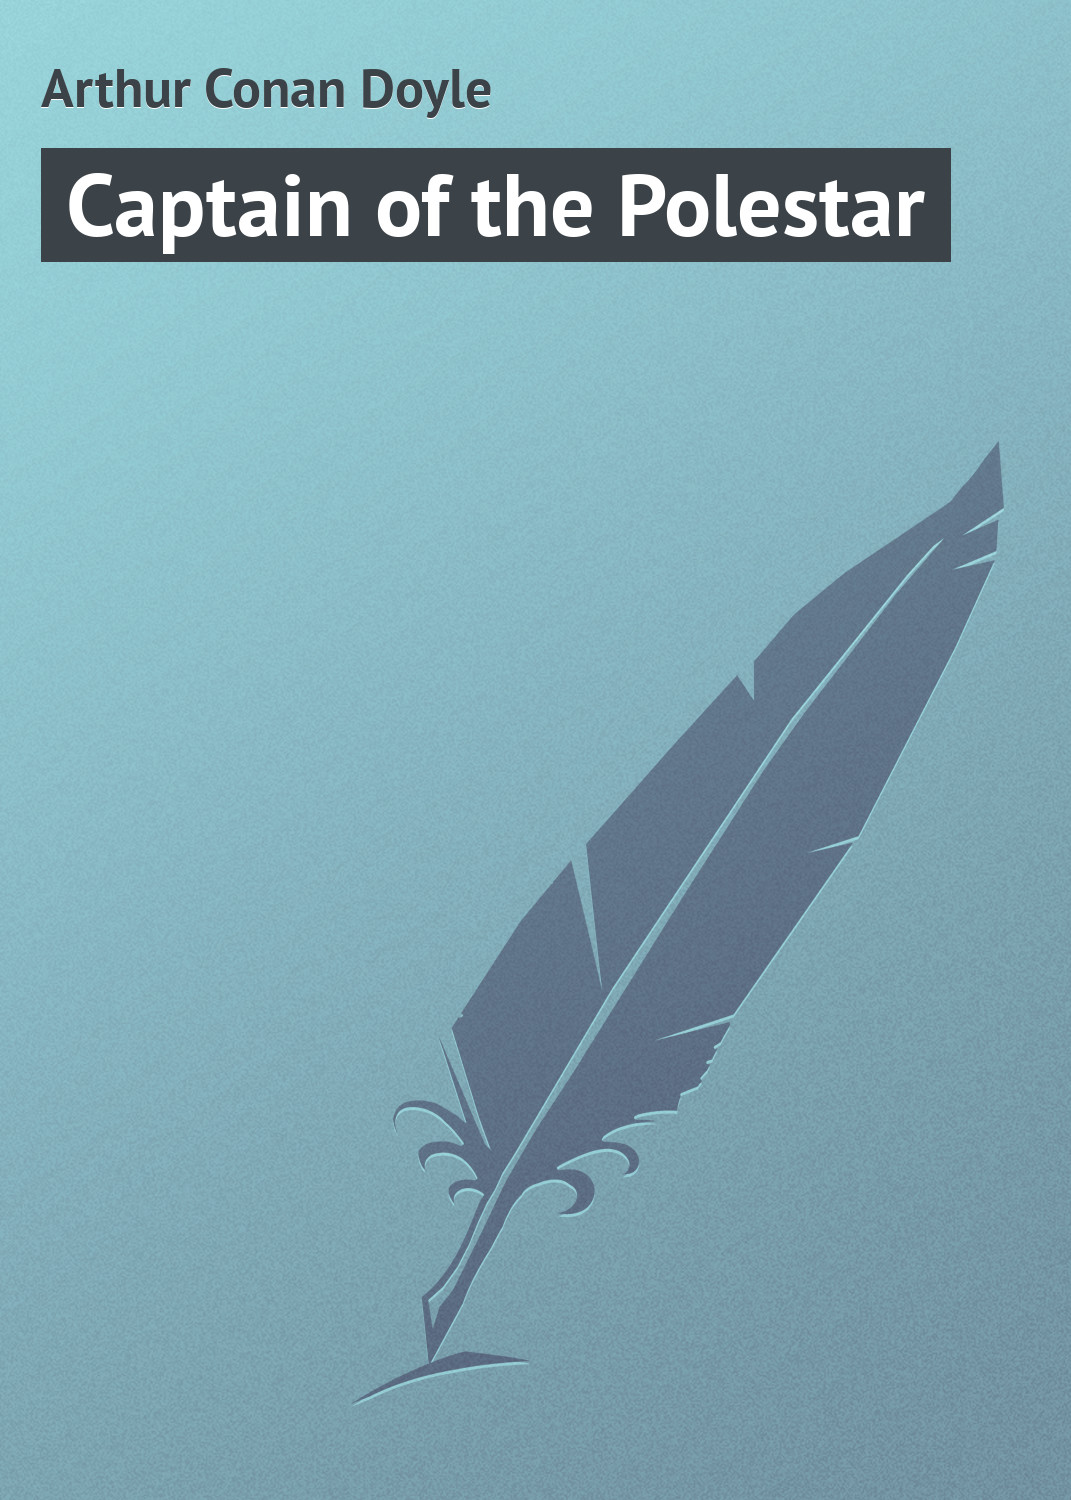 Книга Captain of the Polestar из серии , созданная  Arthur Conan Doyle, может относится к жанру Зарубежные приключения, Зарубежная классика, Морские приключения. Стоимость электронной книги Captain of the Polestar с идентификатором 8508692 составляет 29.95 руб.